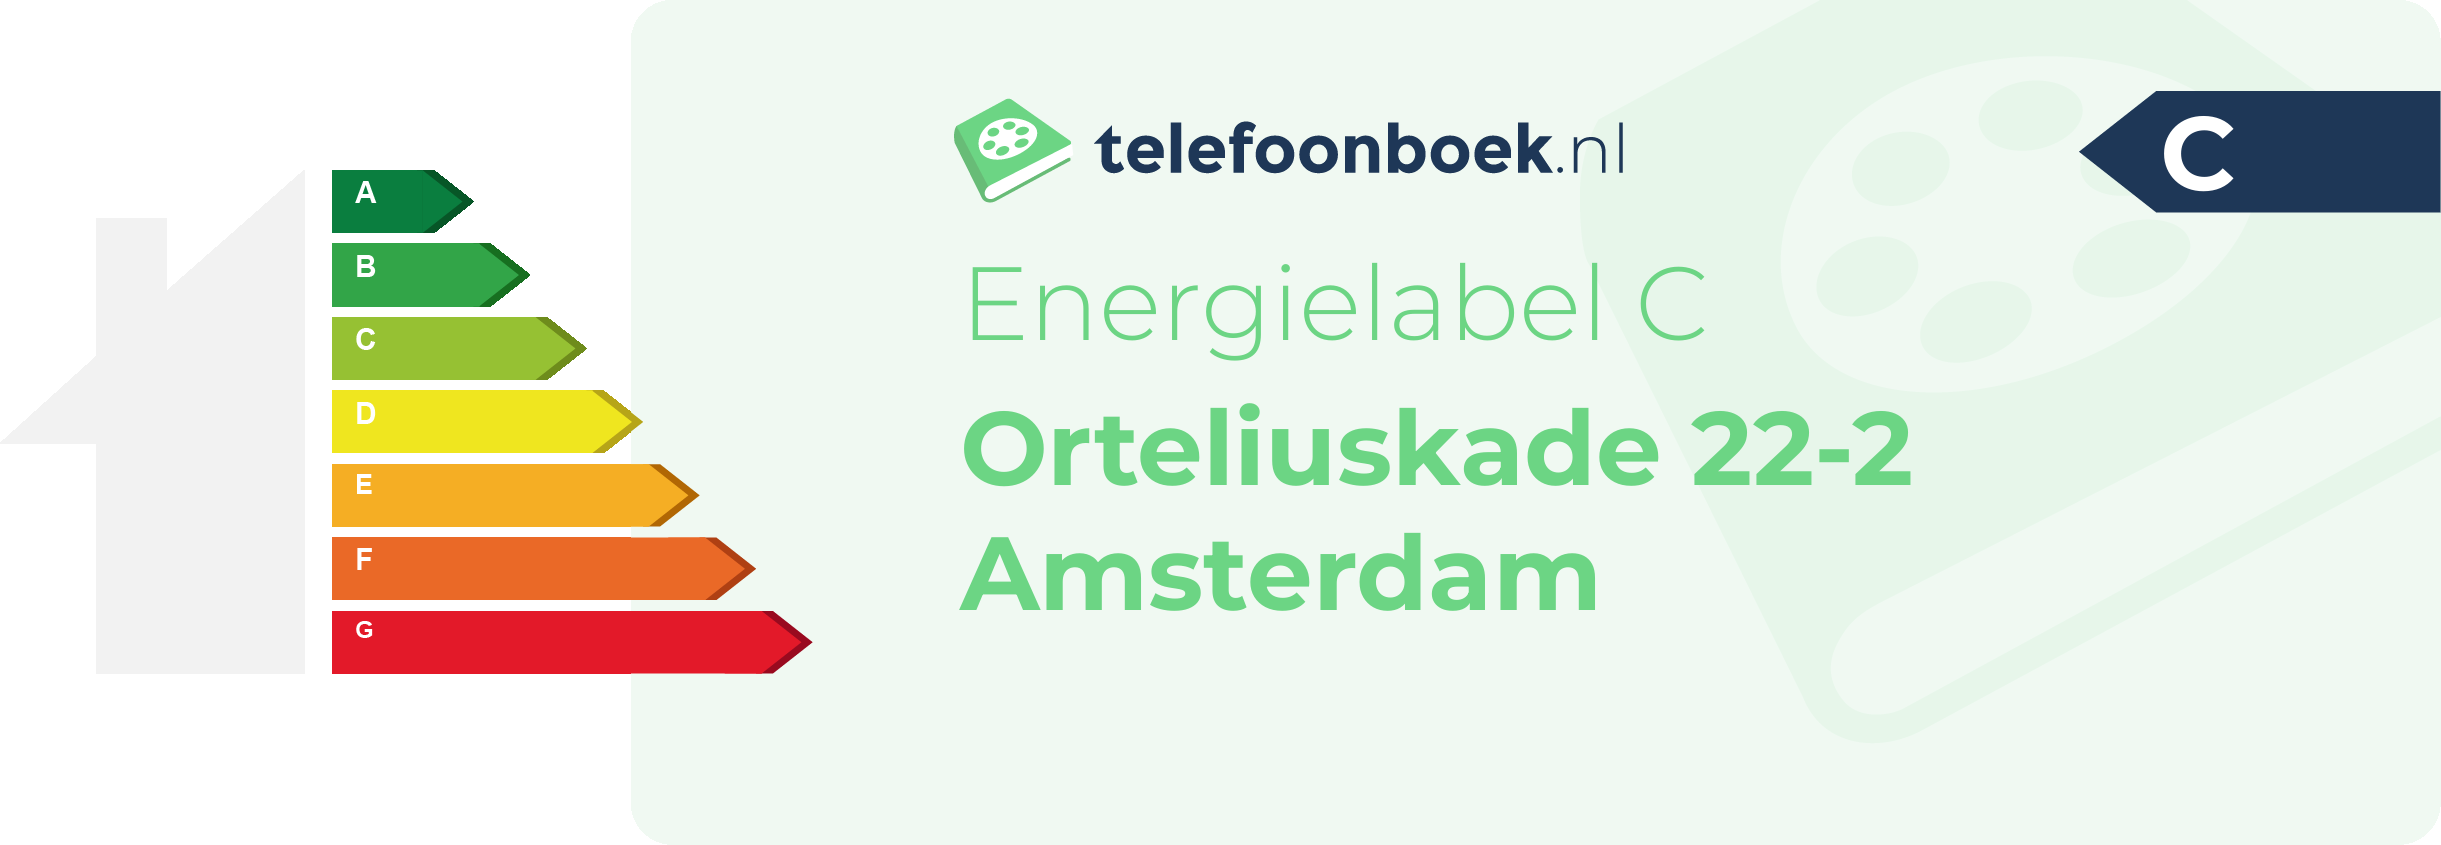 Energielabel Orteliuskade 22-2 Amsterdam